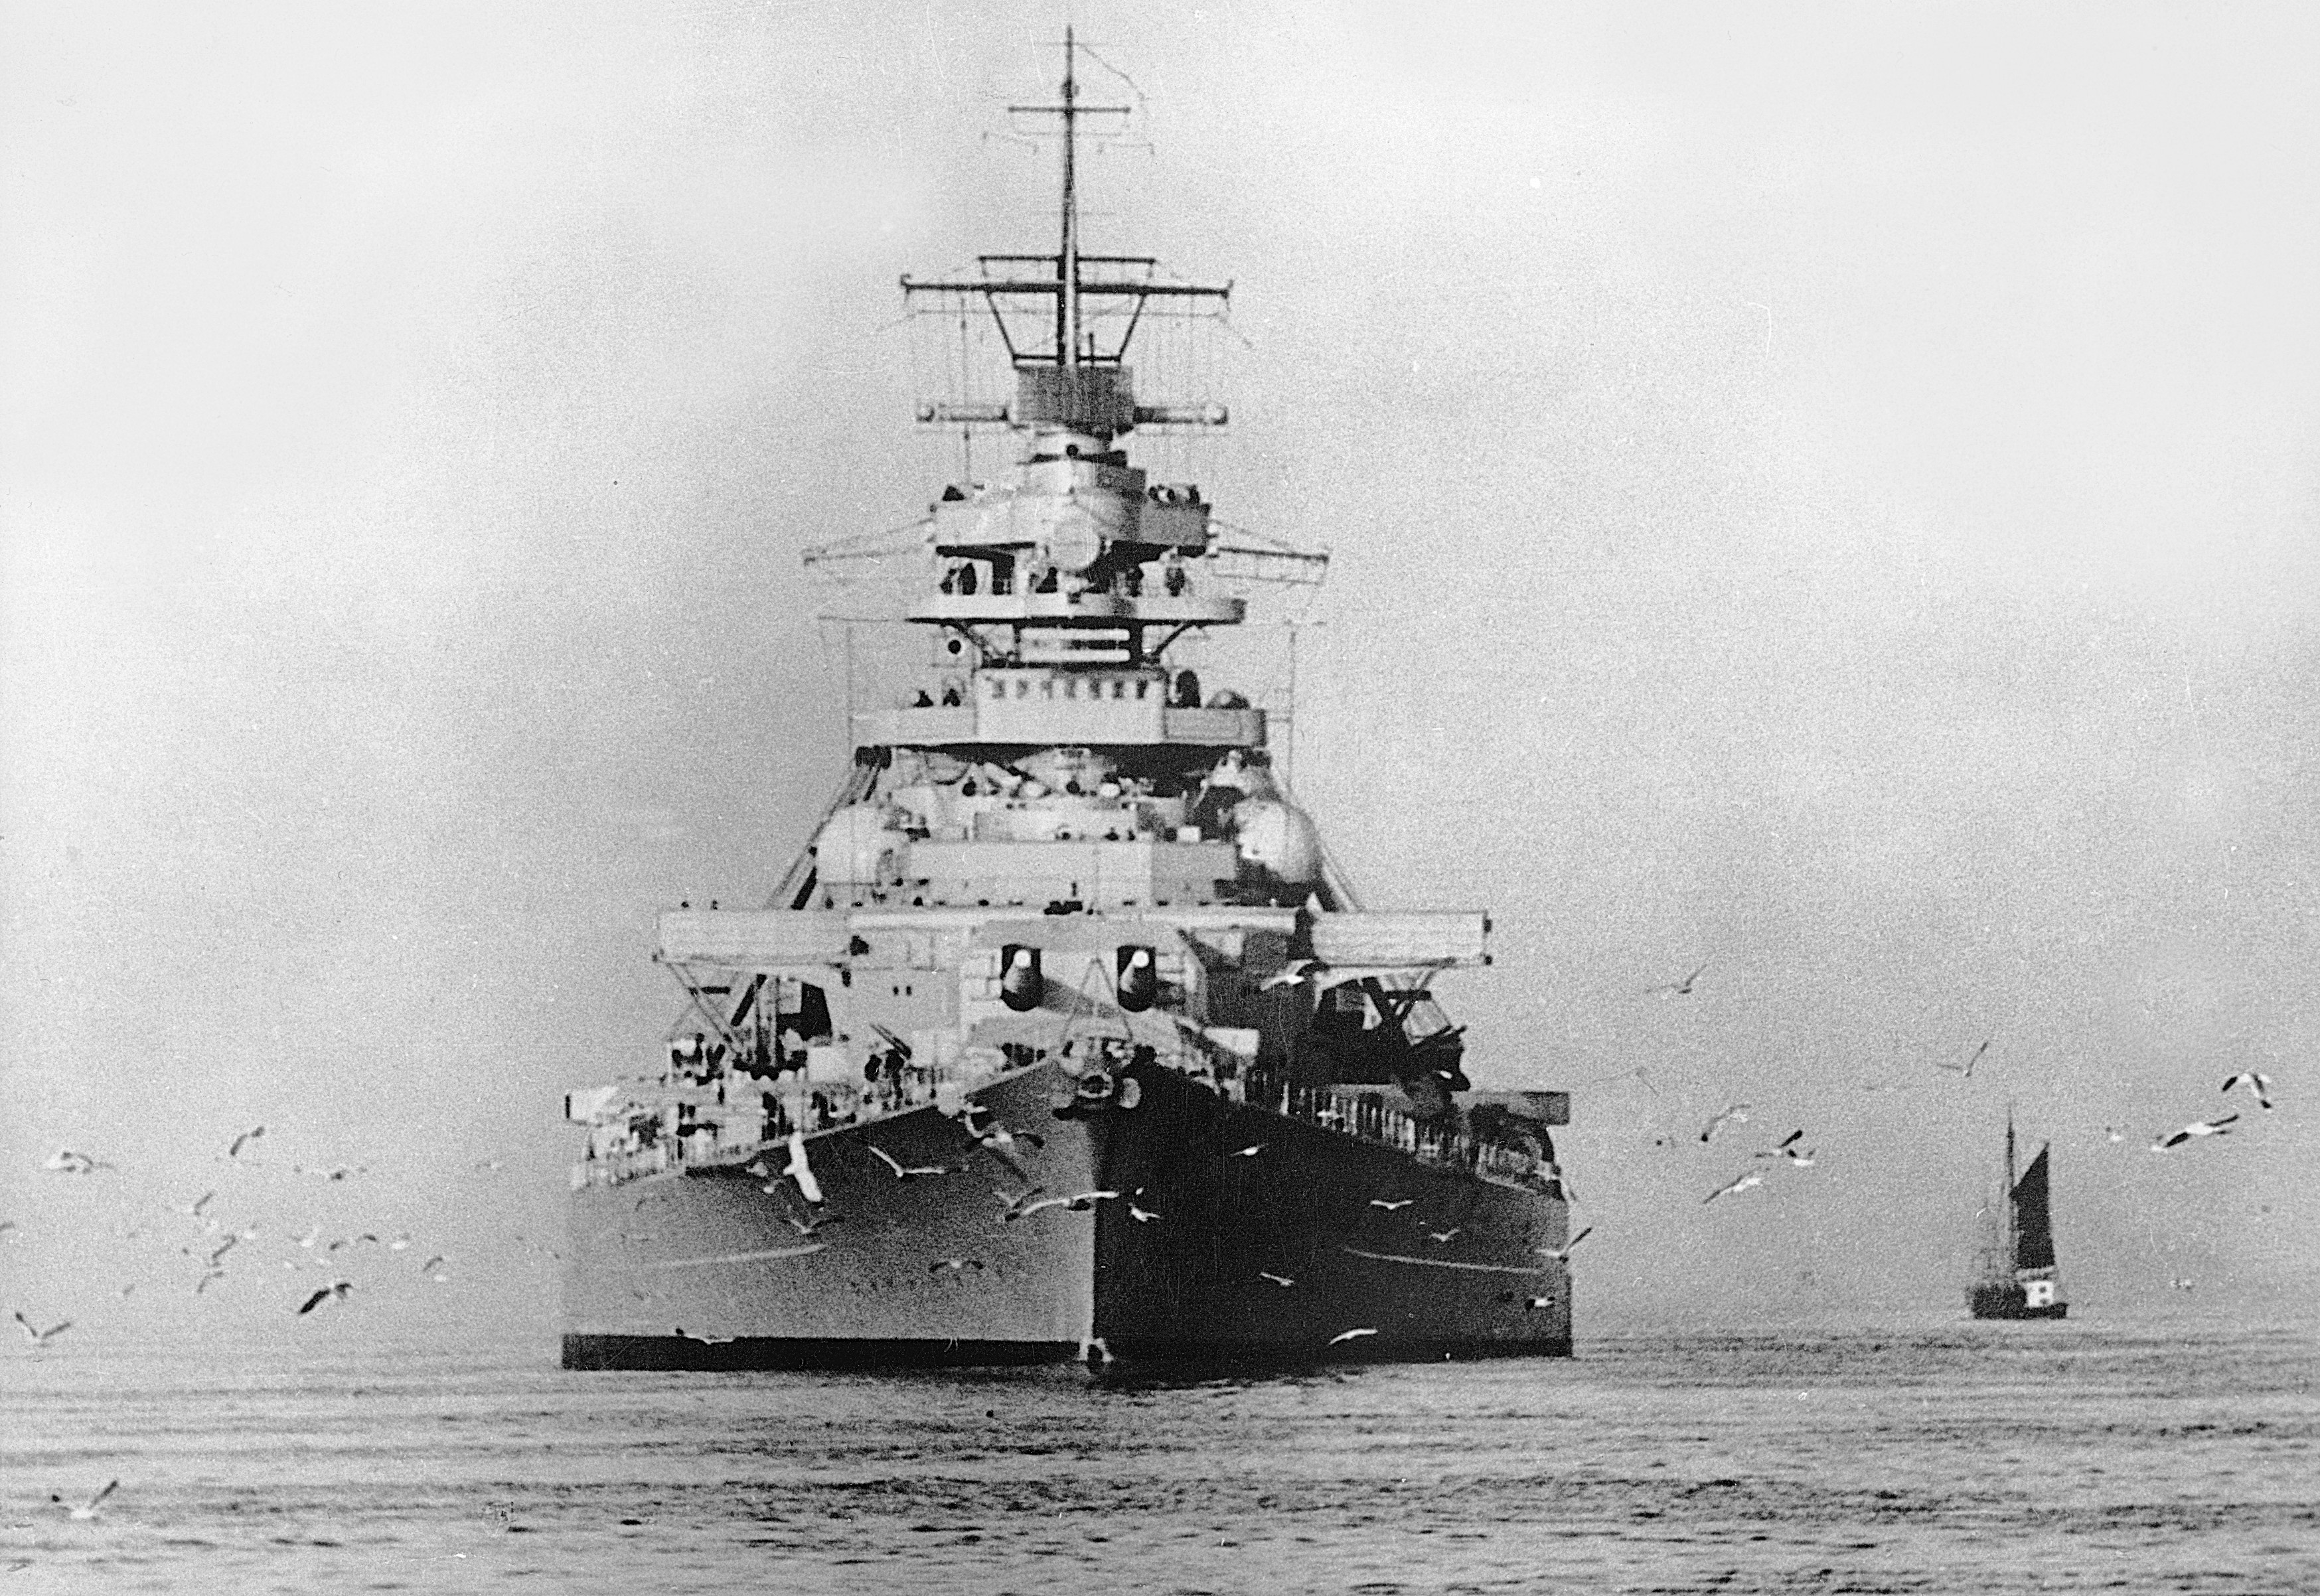 Military German battleship Bismarck HD Wallpaper | Background Image